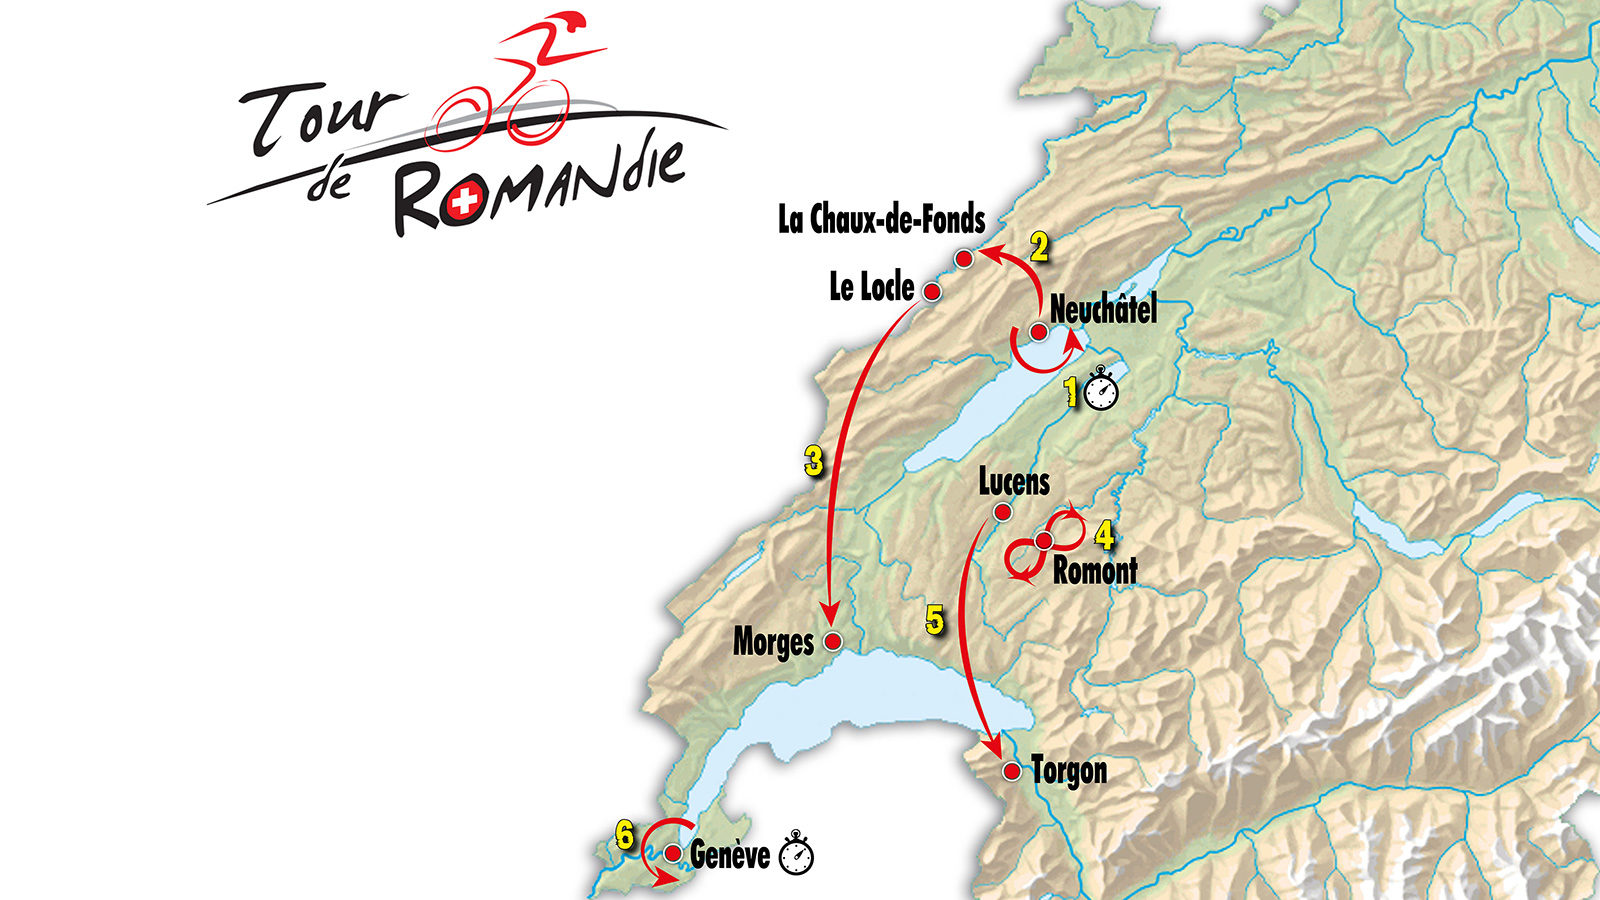 tour of romandie route